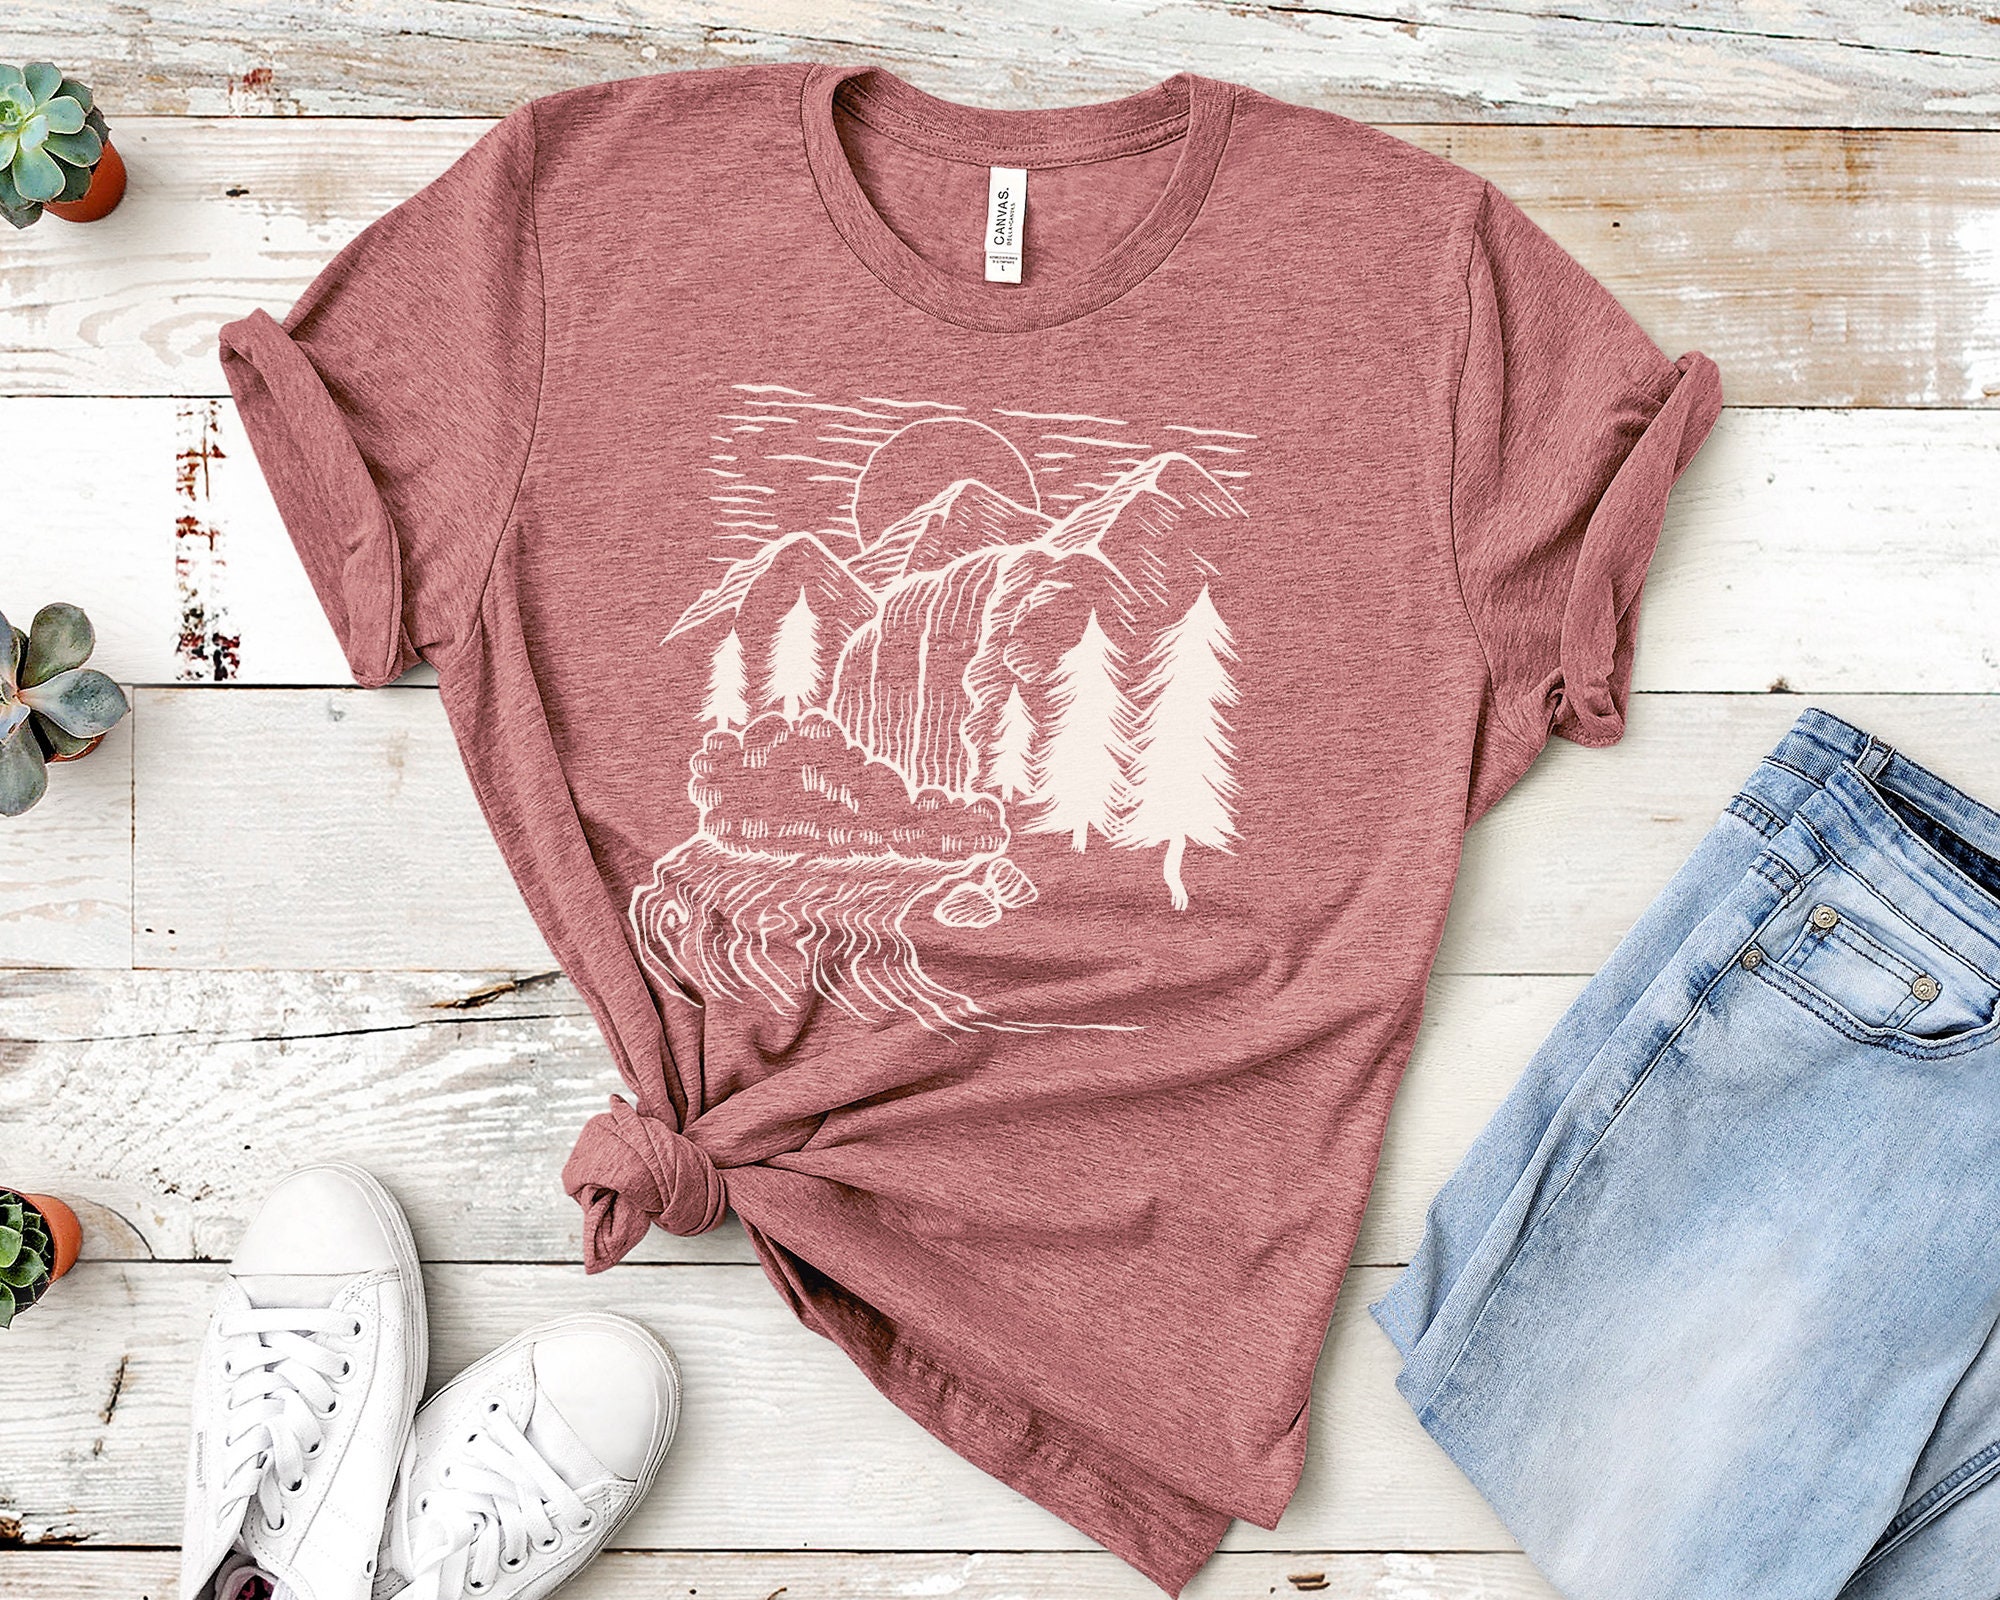 Wanderlust Hiking & Camping Unisex Short Sleeve Tee Shirt | Etsy